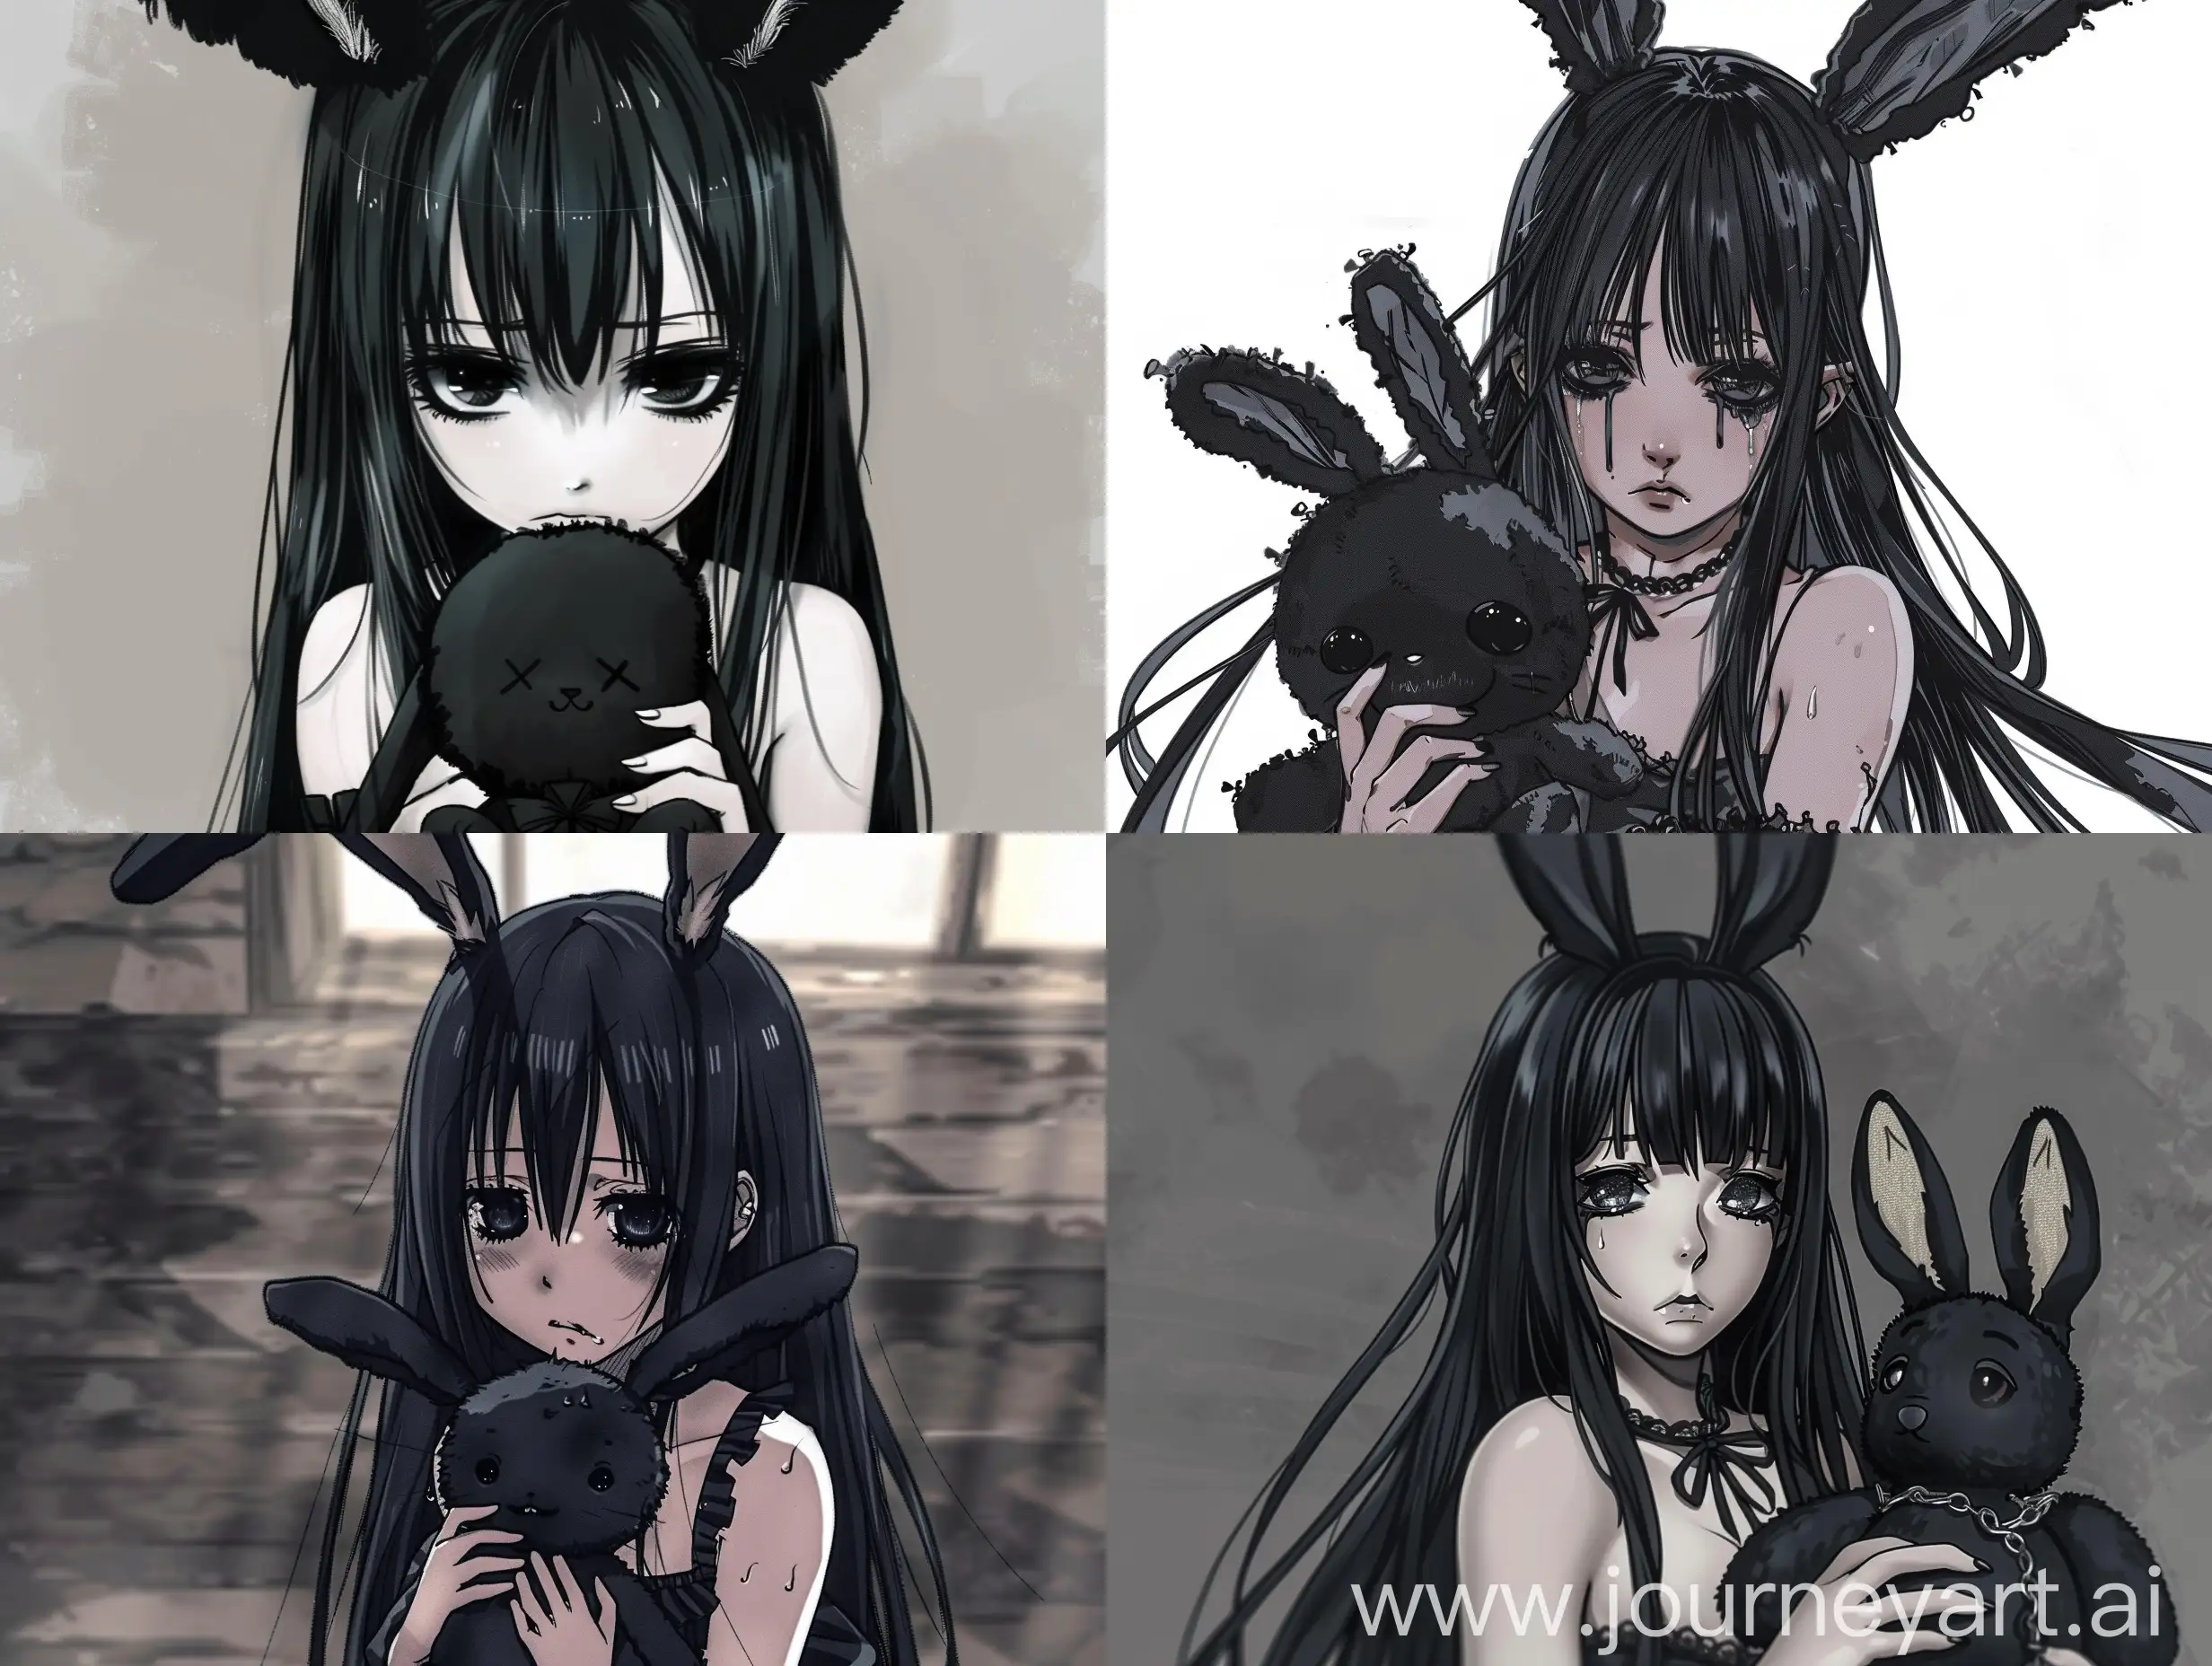 грустная девушка гот с заячьими ушами, с черными длинными волосами, держащая в руках плюшевую черную игрушку в виде зайчика